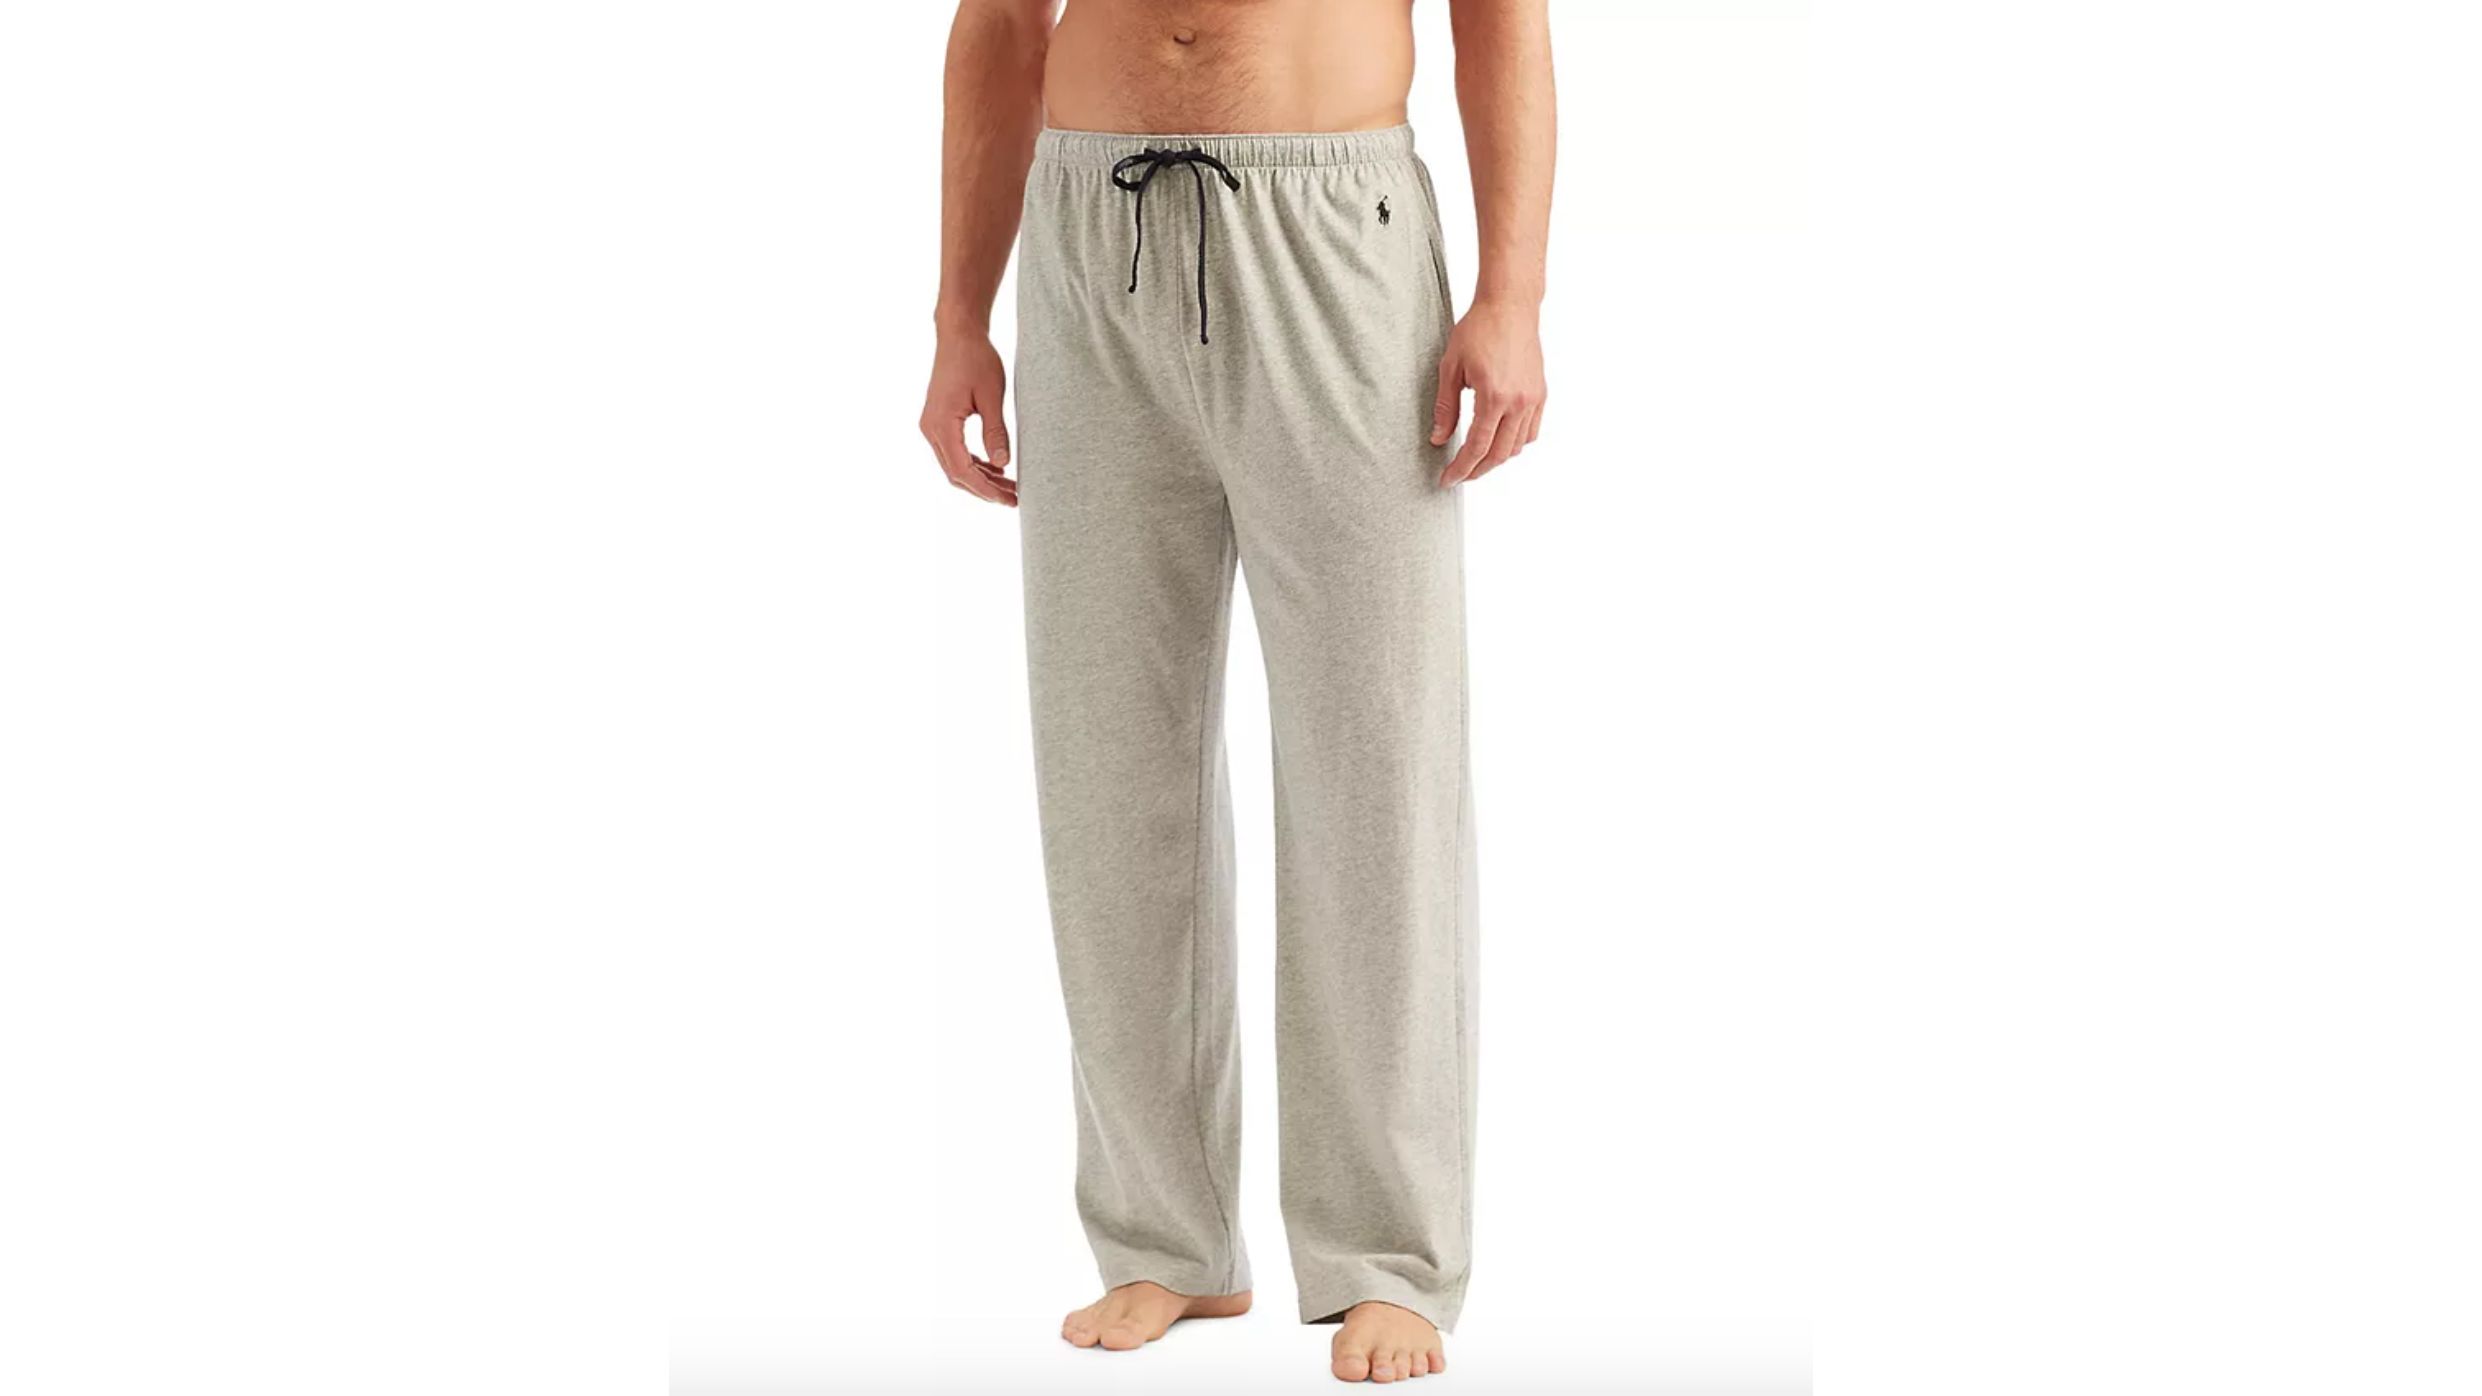 COMFORTABLE CLUB Mens Modal Lounge Pants/Pajama Bottoms